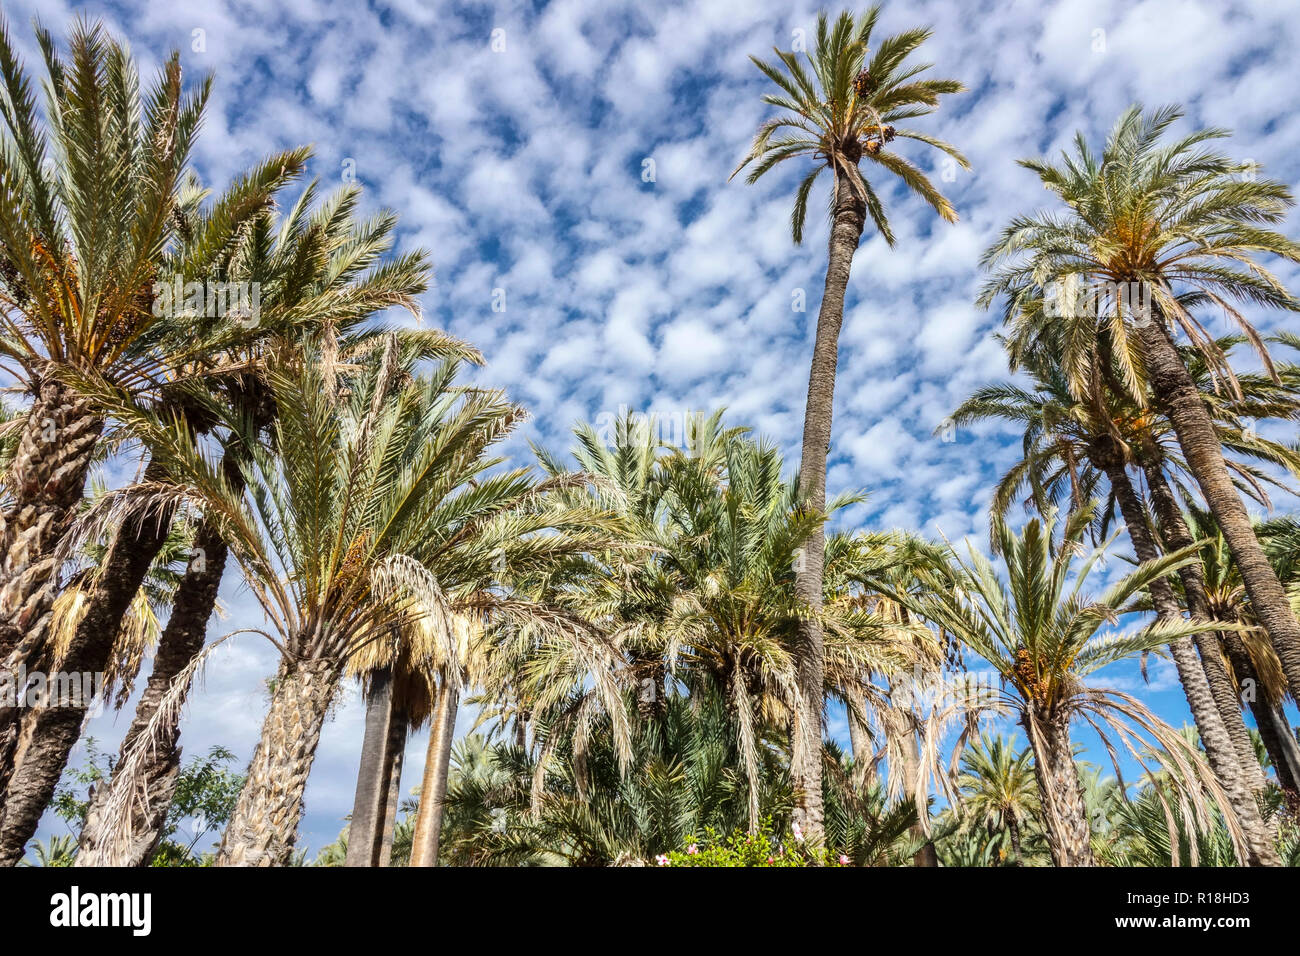 Spagna, palme di Elche, famoso luogo turistico, giardino della regione palmeral Elche Valencia con palme Foto Stock